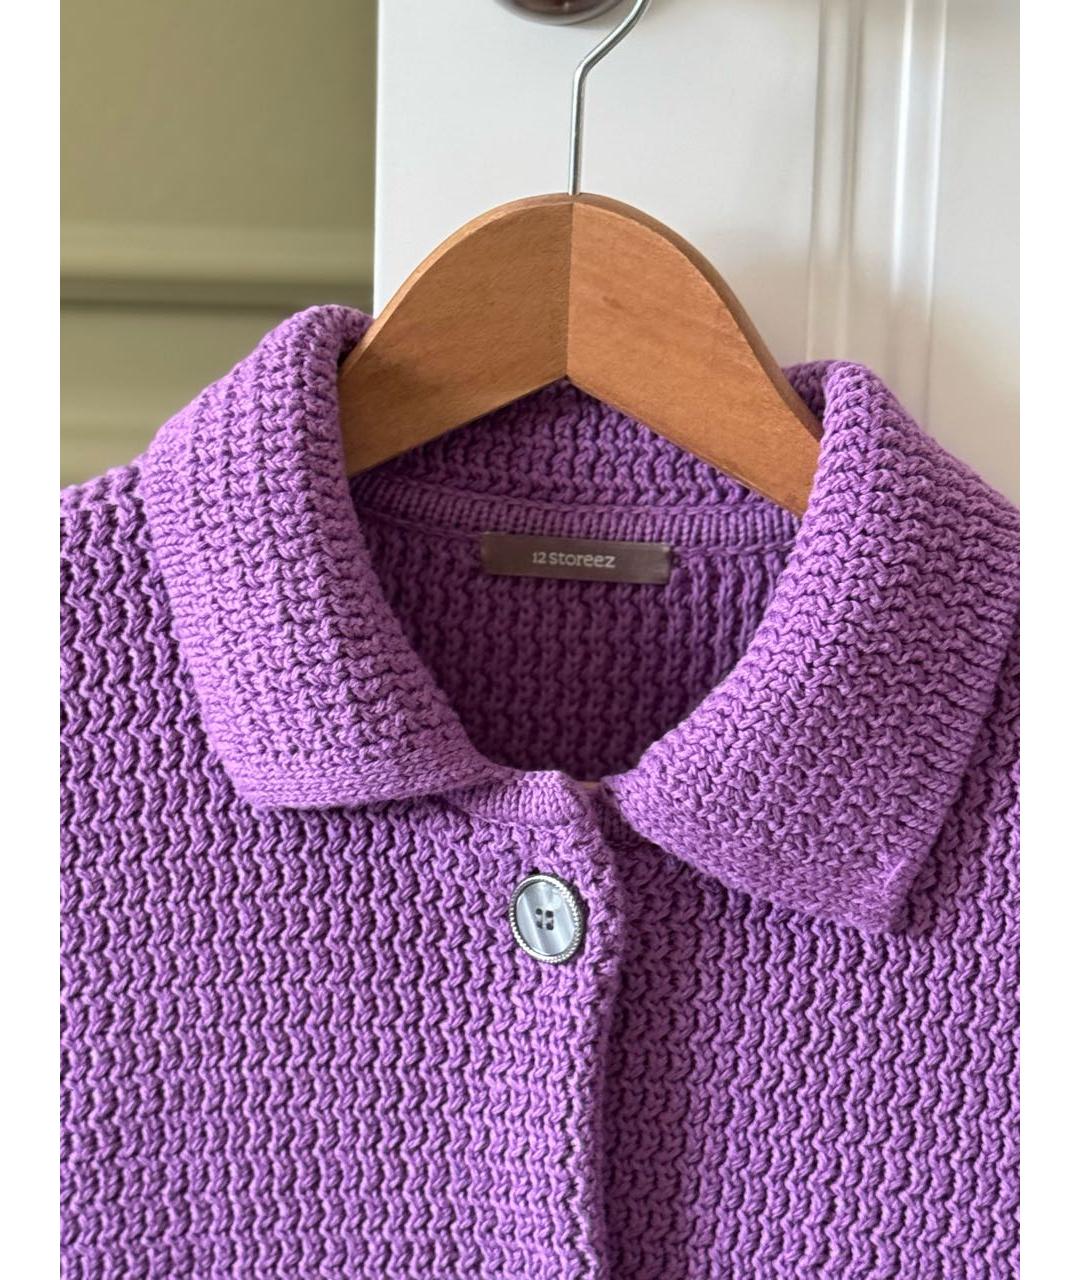 12 STOREEZ Фиолетовый хлопковый жакет/пиджак, фото 3